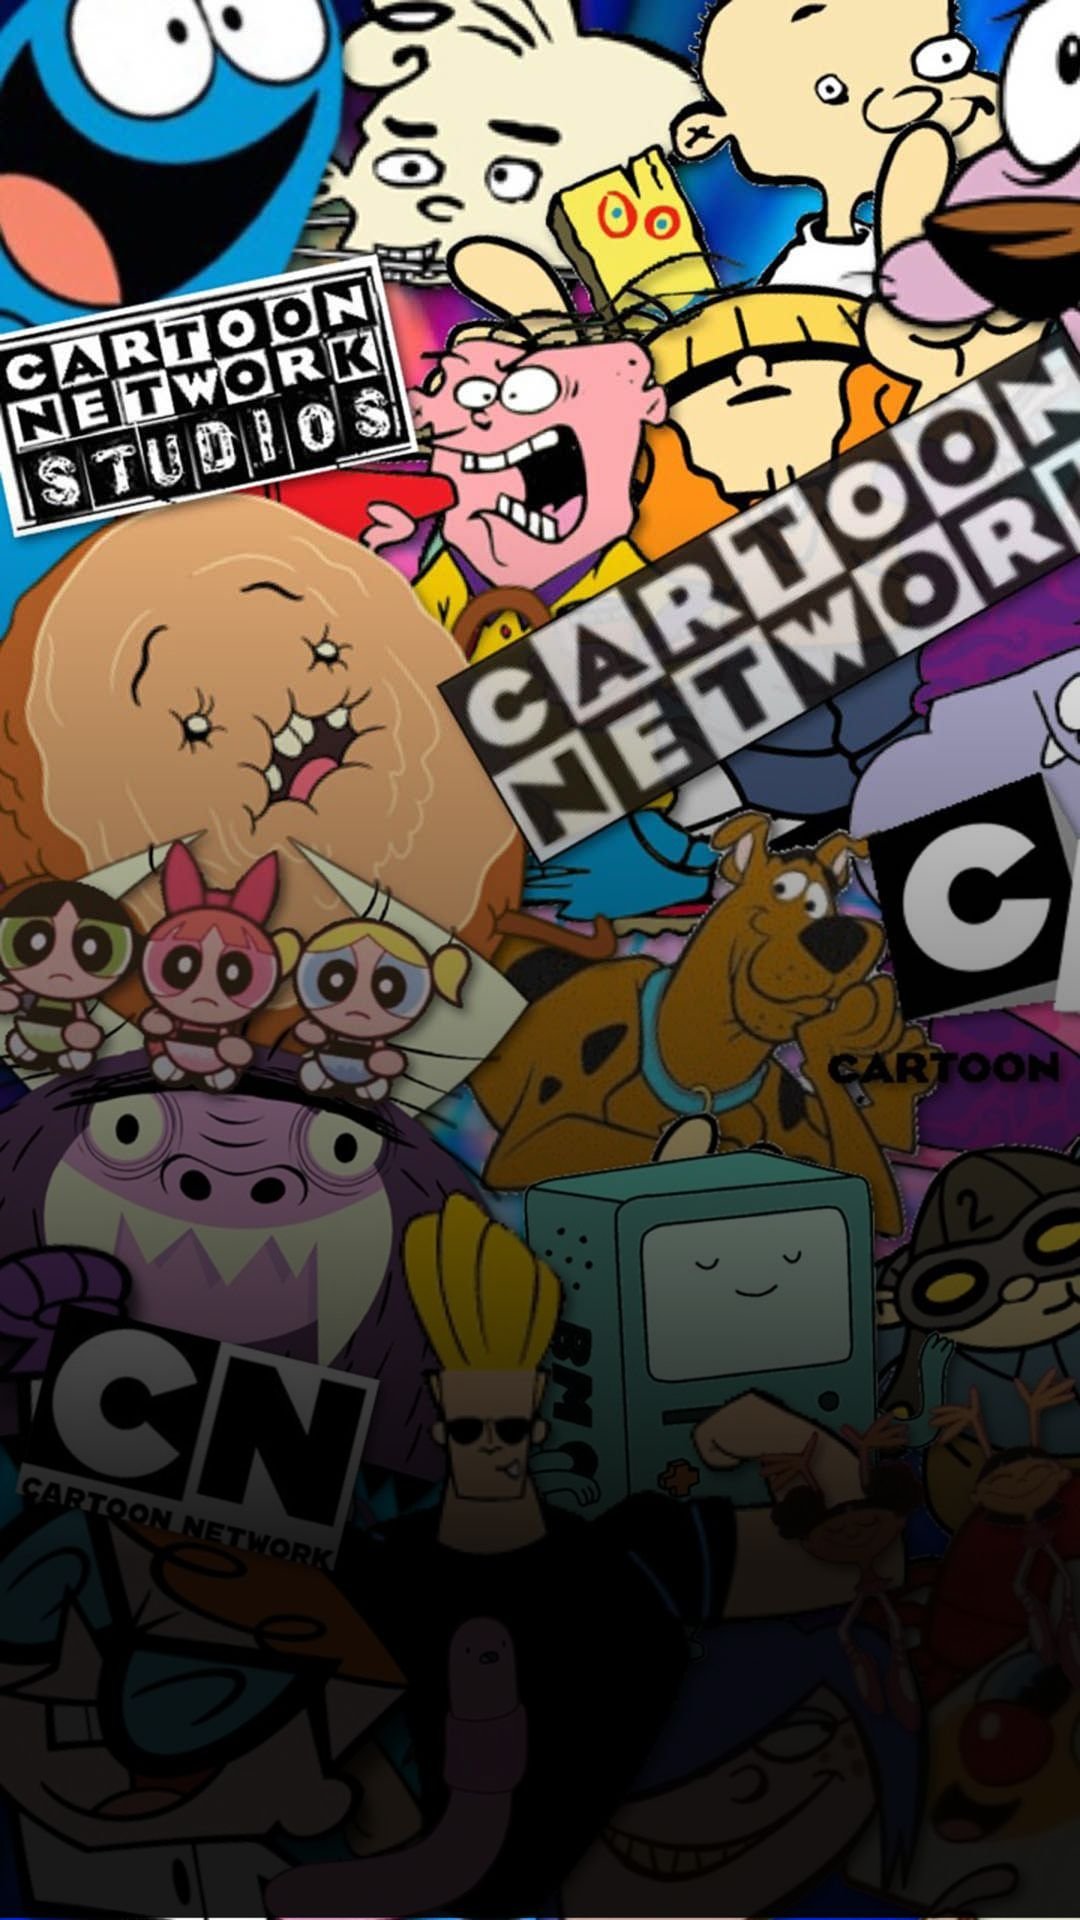 Os 10 melhores desenhos do Cartoon Network e onde assistir online